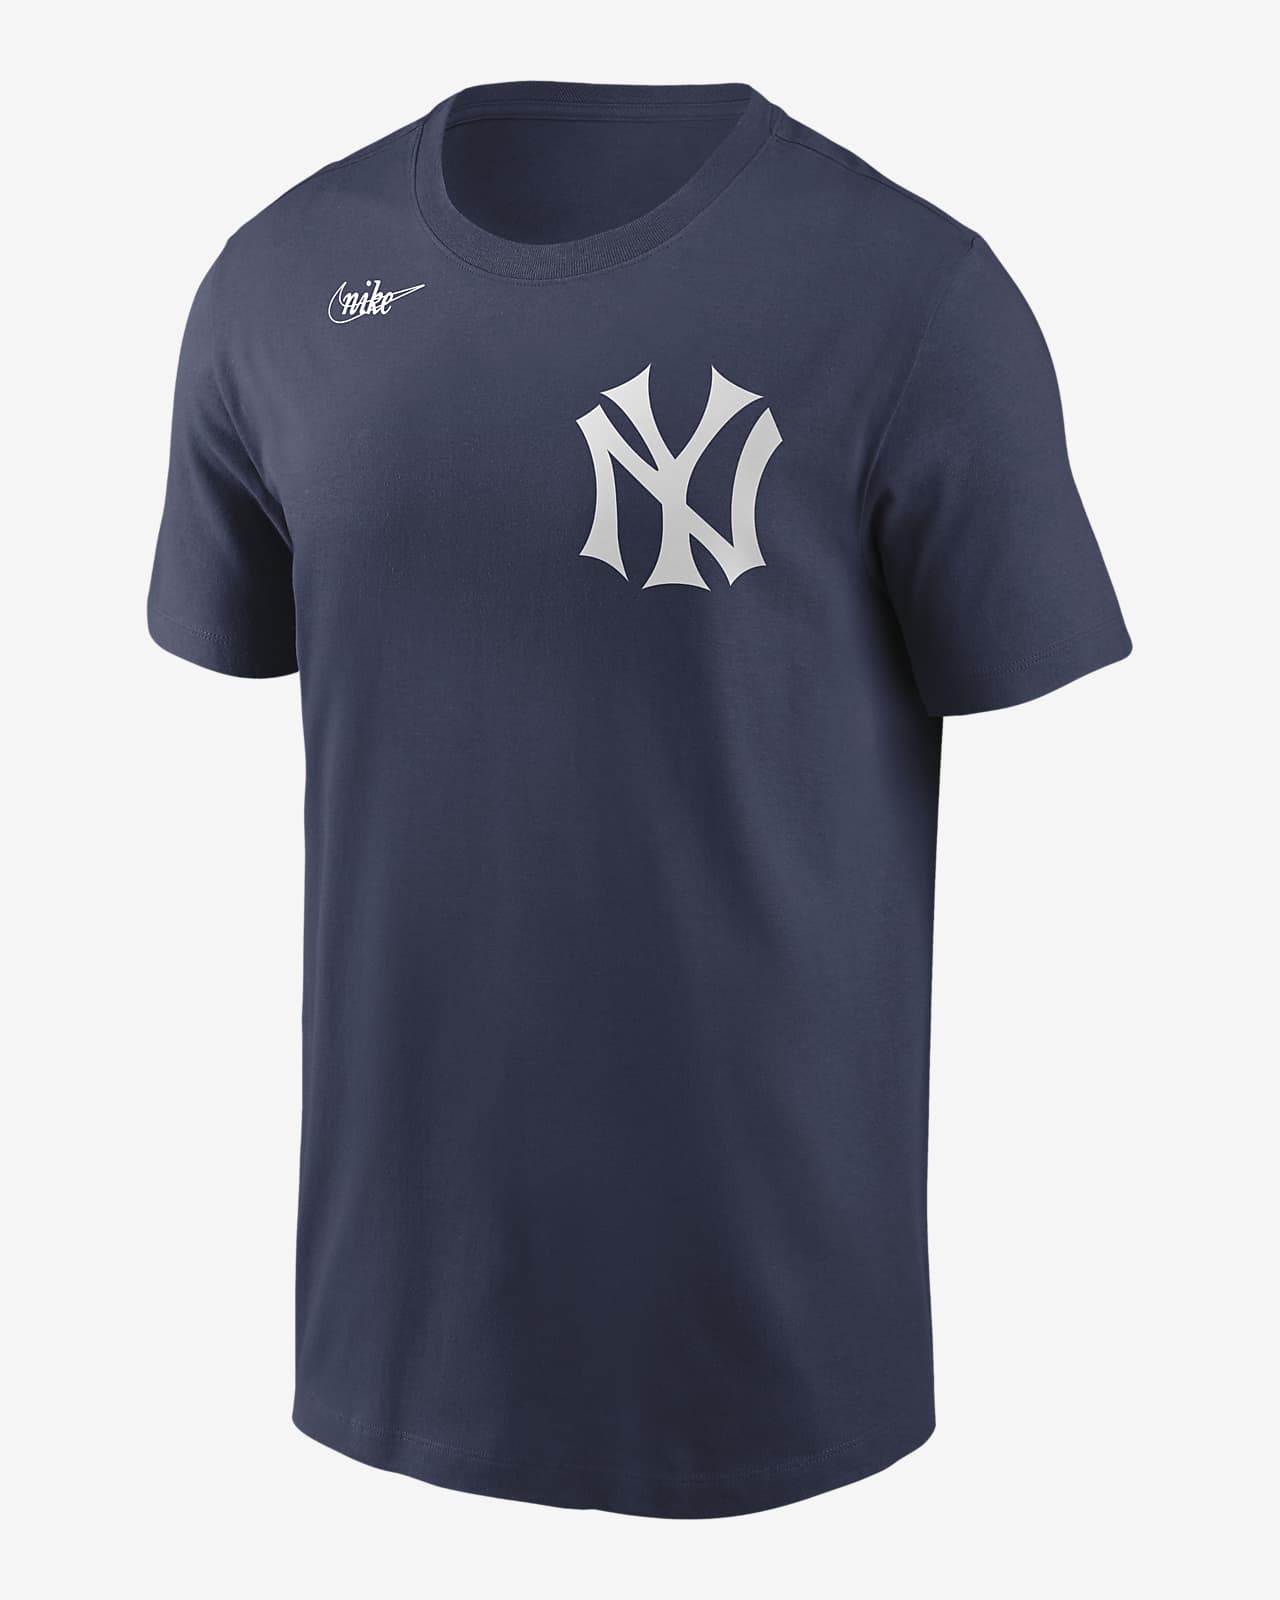 MLB New York Yankees (Thurman Munson) Men's T-Shirt. Nike.com